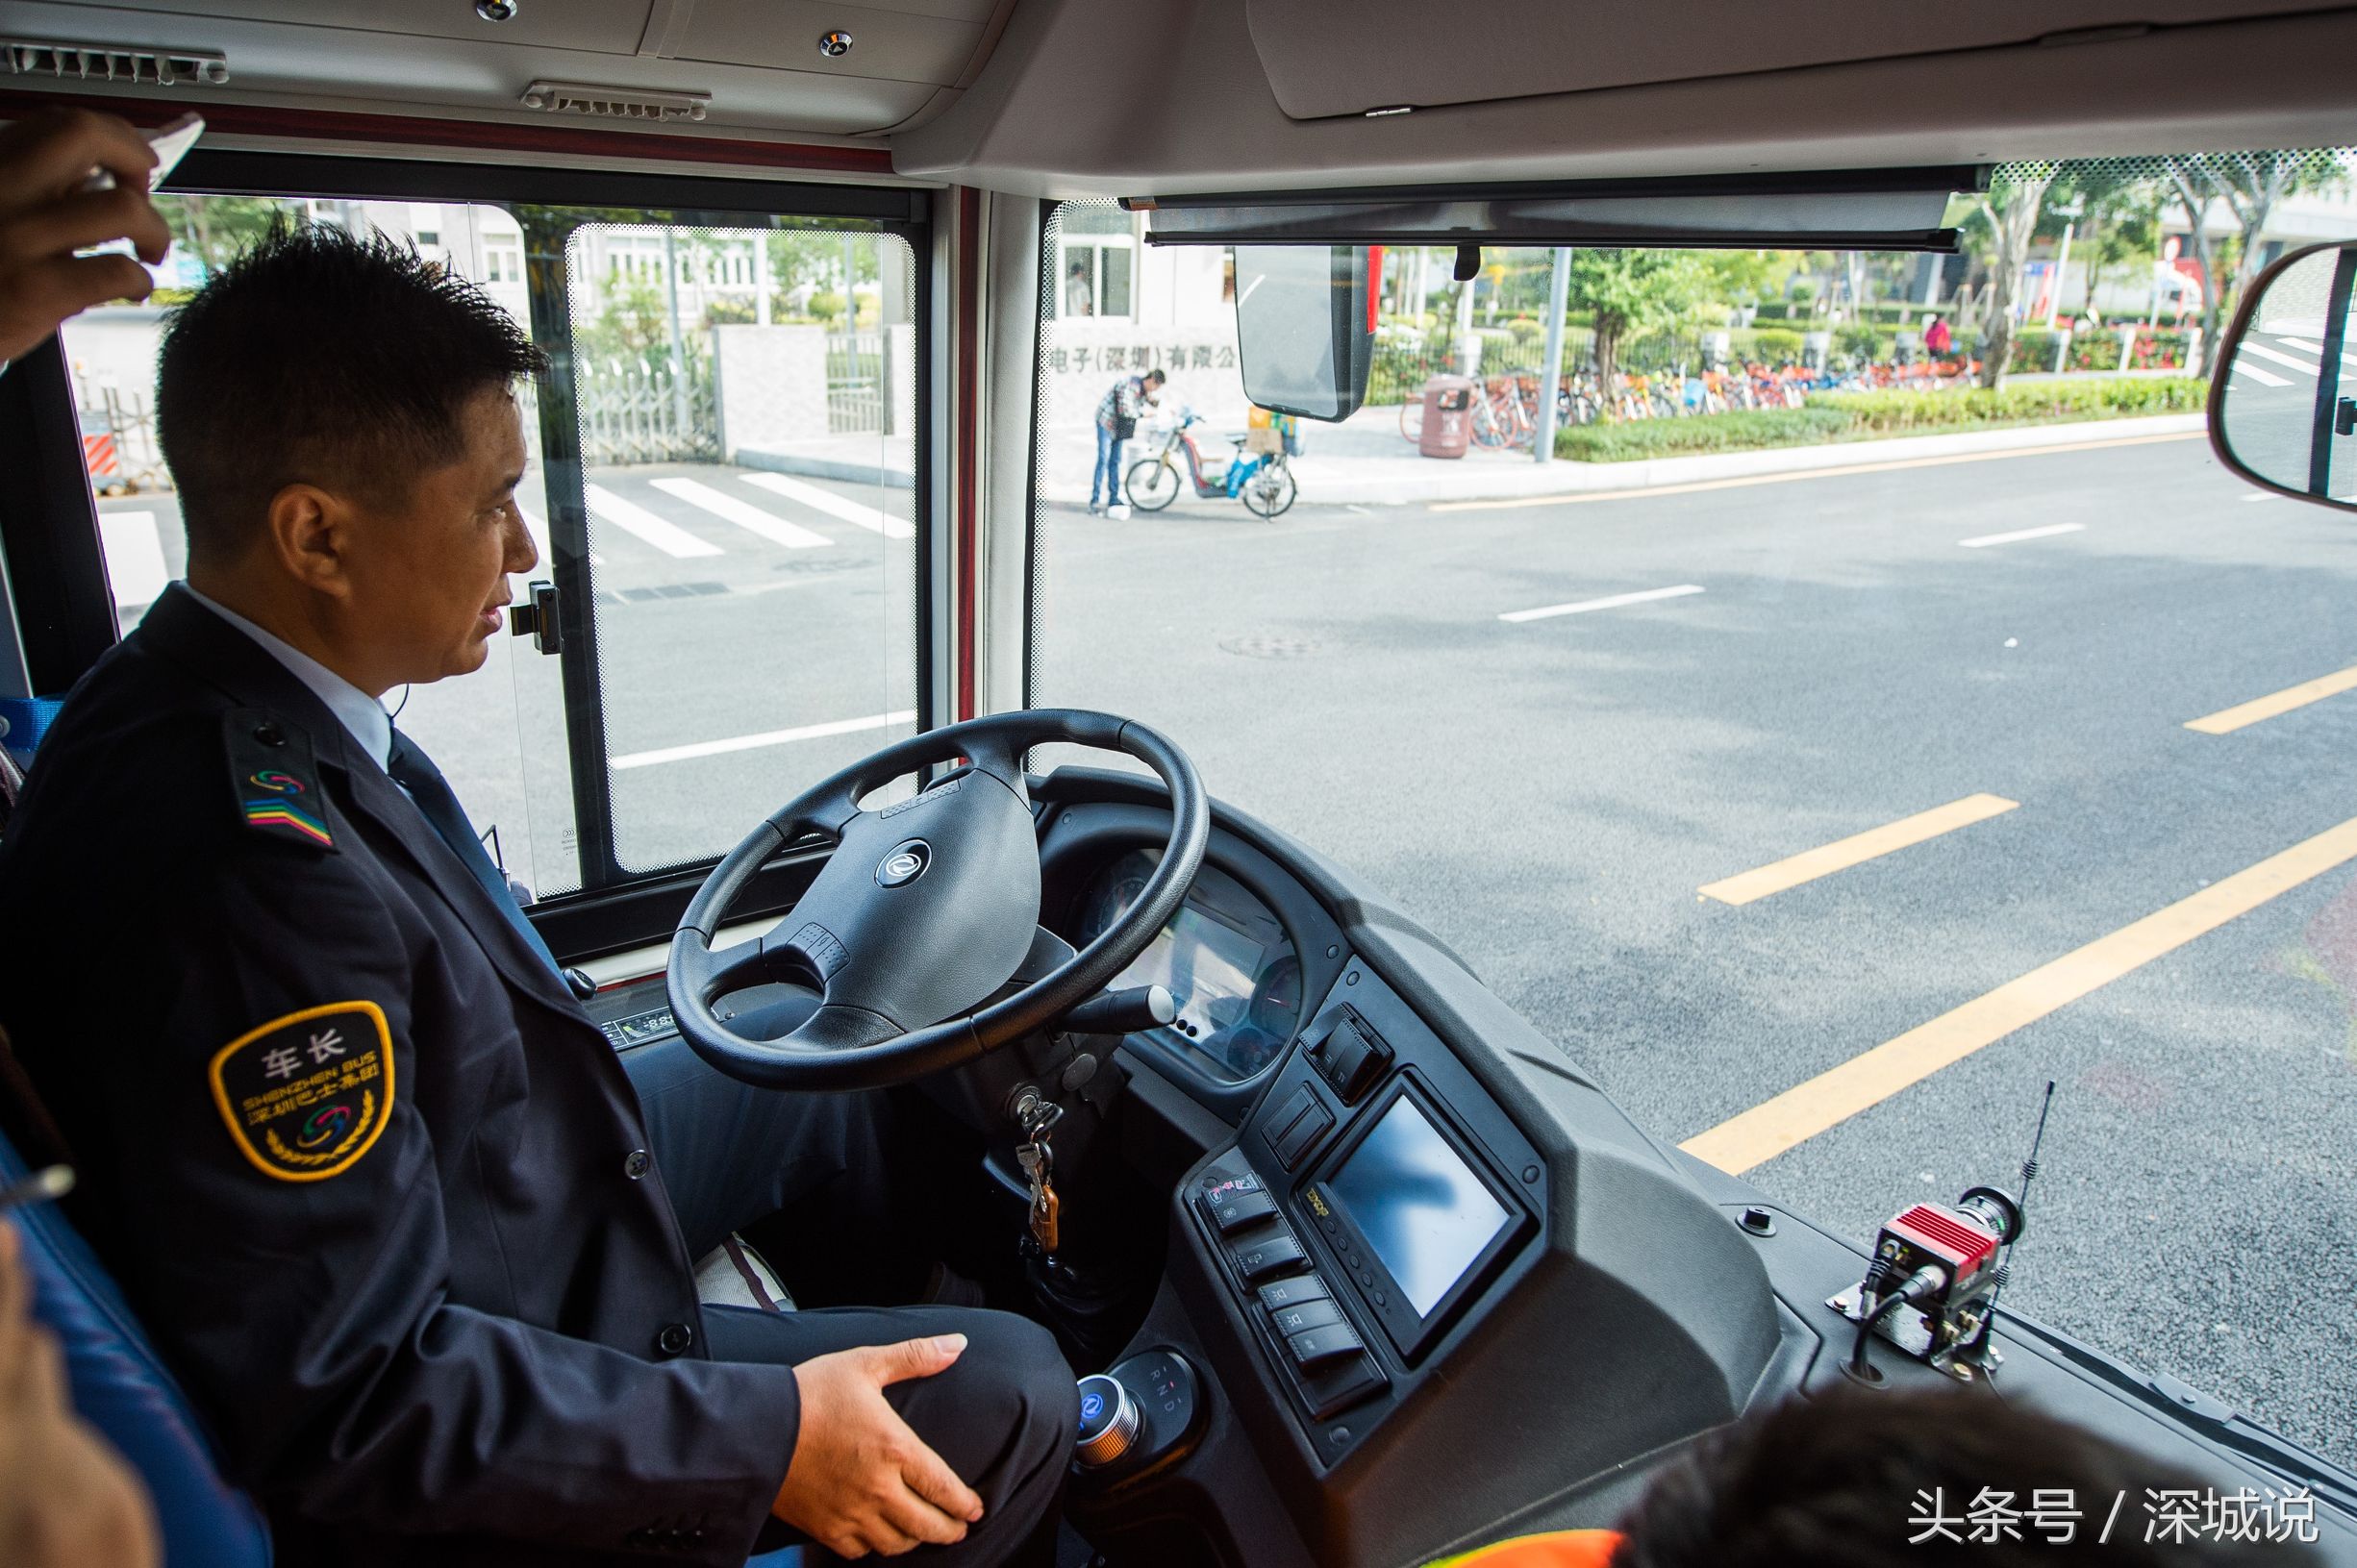 来自未来的巴士!全球首批智能驾驶公交亮相深圳,方向盘会自己动